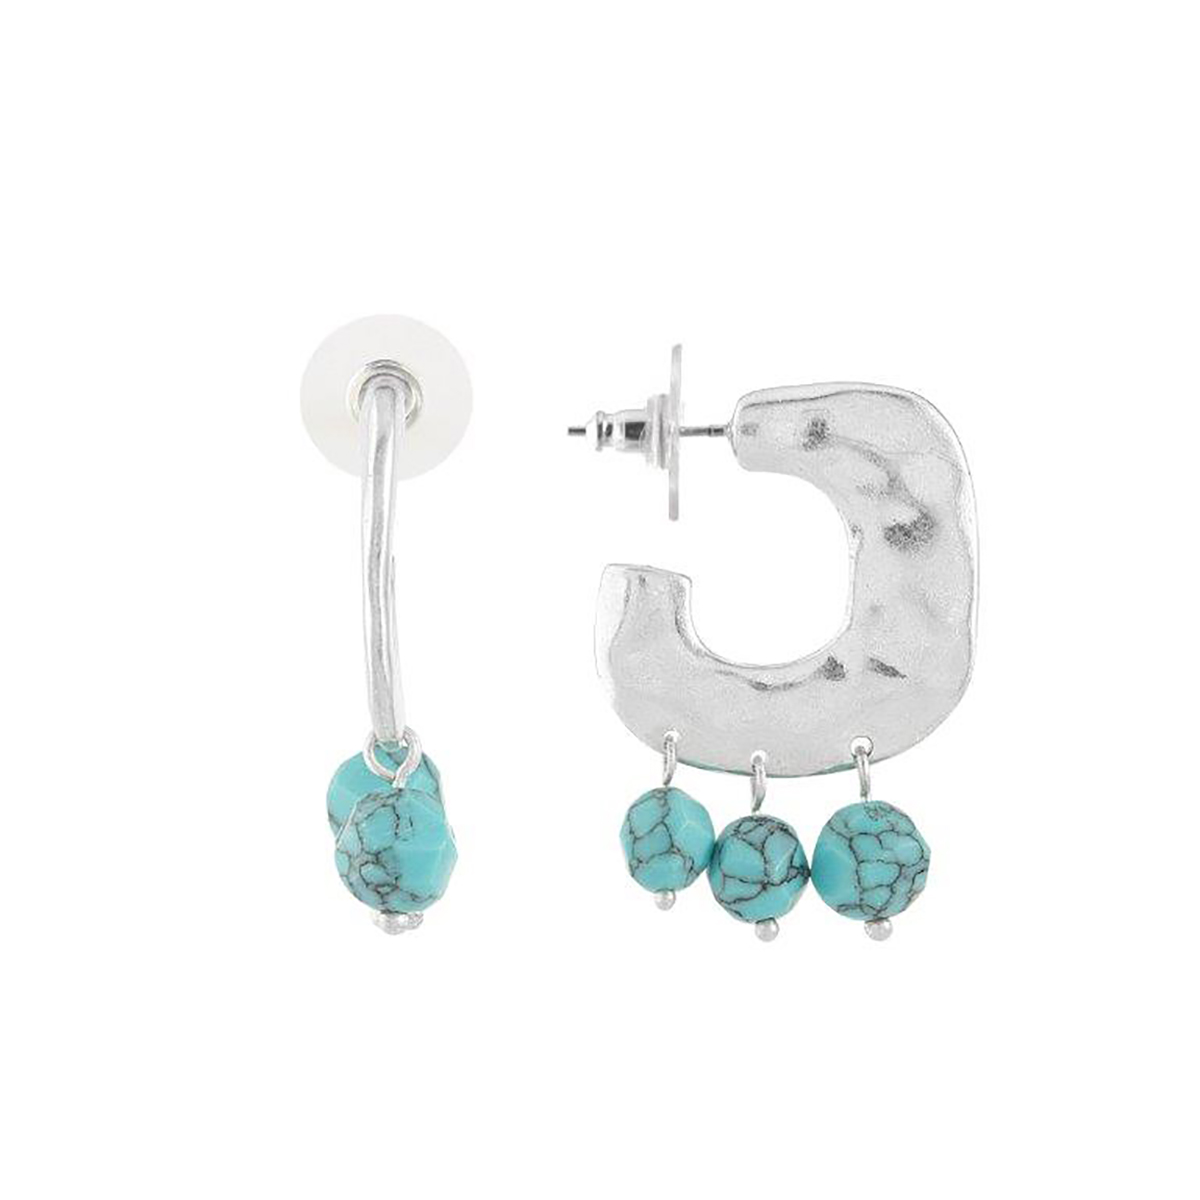 Bella Uno Silver-Tone Turquoise 3 Bead Hoop Earrings